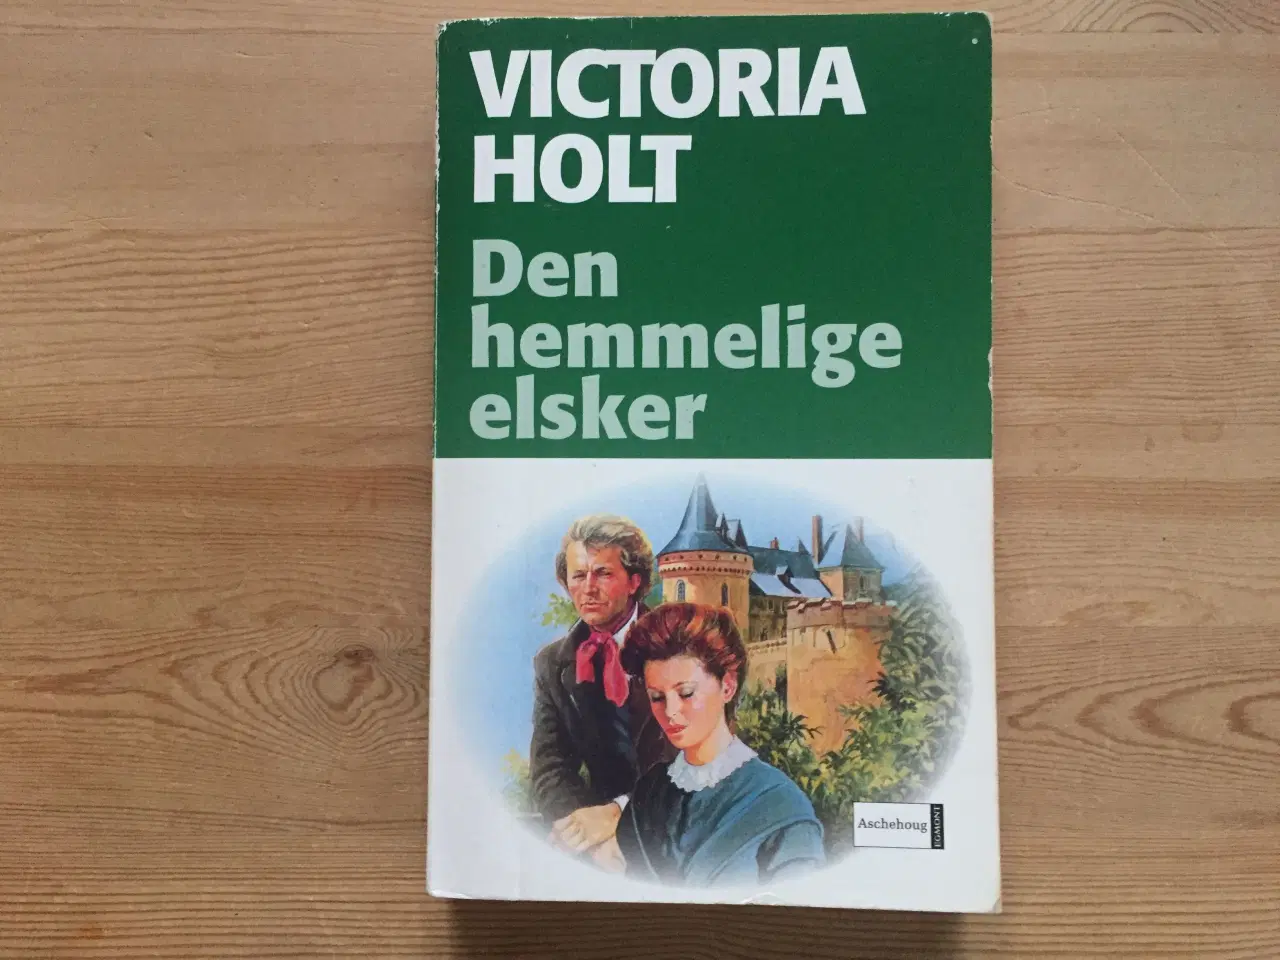 Billede 2 - 5 romaner af Victoria Holt